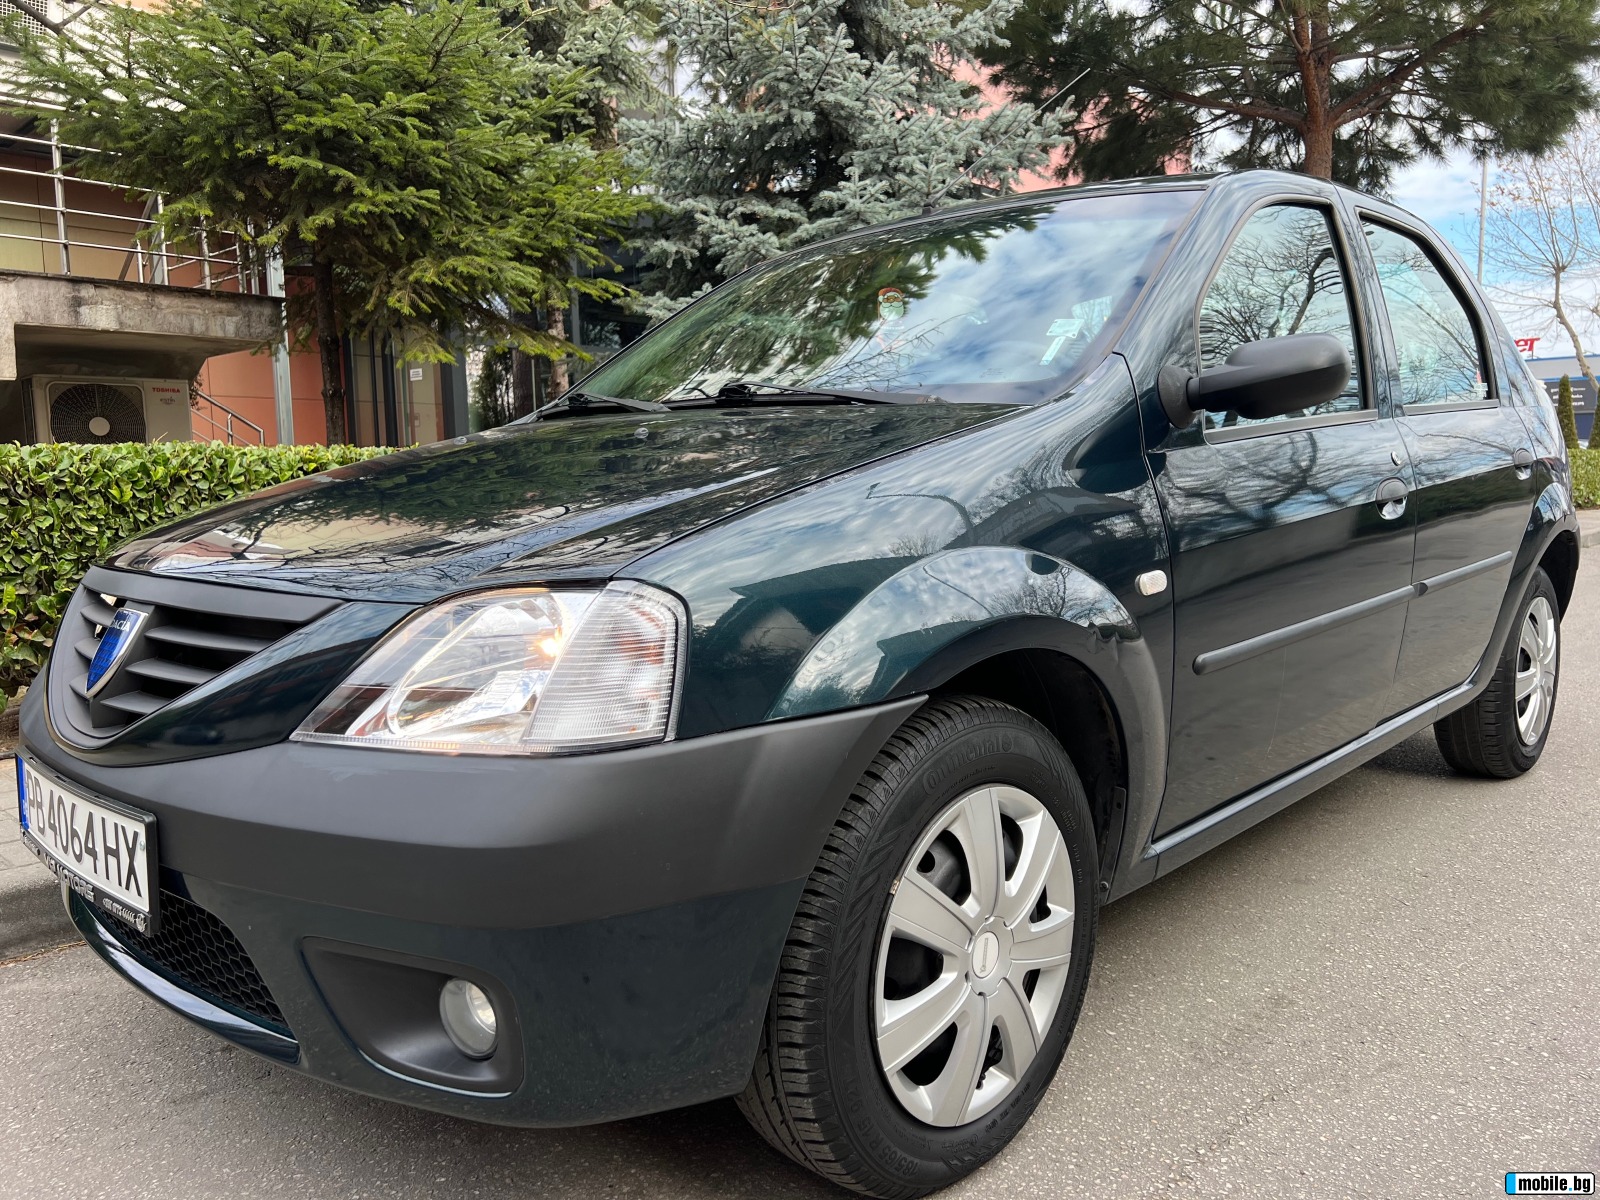 Dacia Logan 1.4i KLIMATIK/70.000km!!!/UNIKAT | Mobile.bg   1